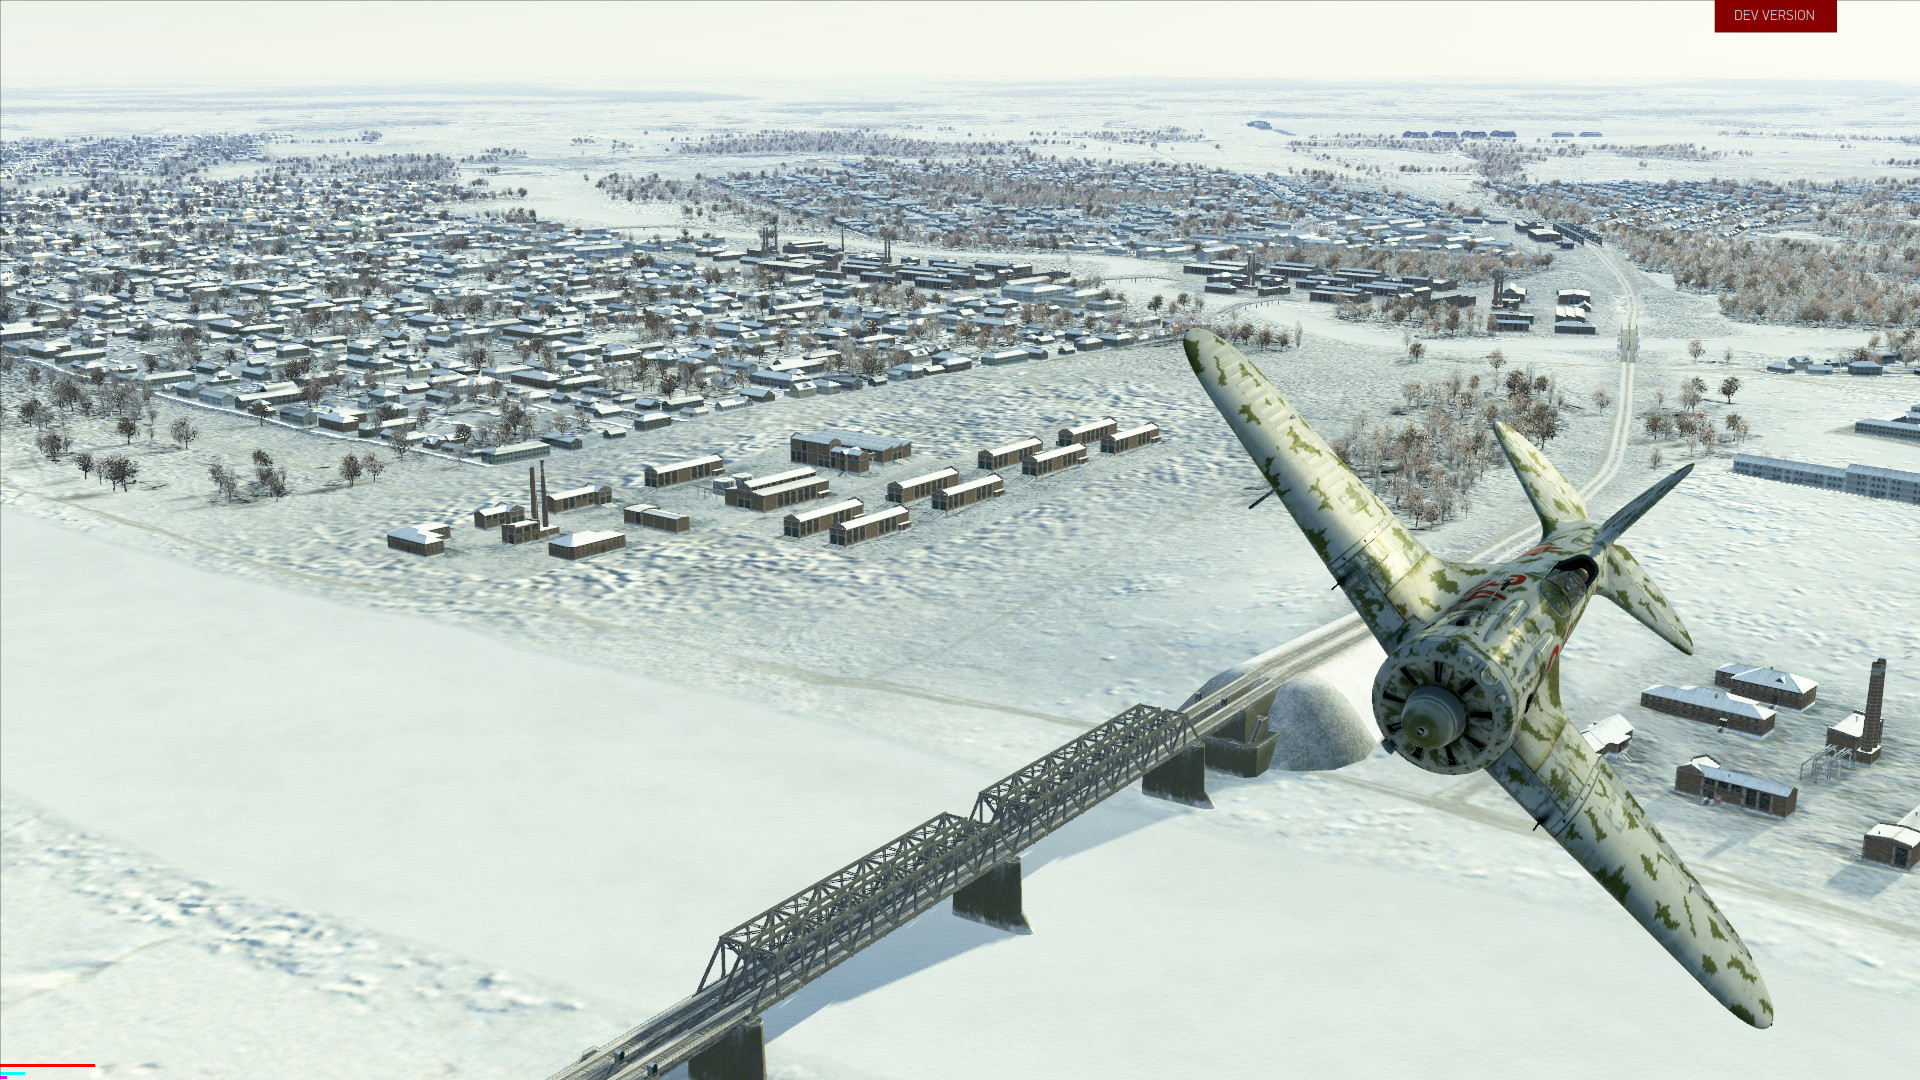 IL-2 Sturmovik: Battle of Moscow - screenshot 16